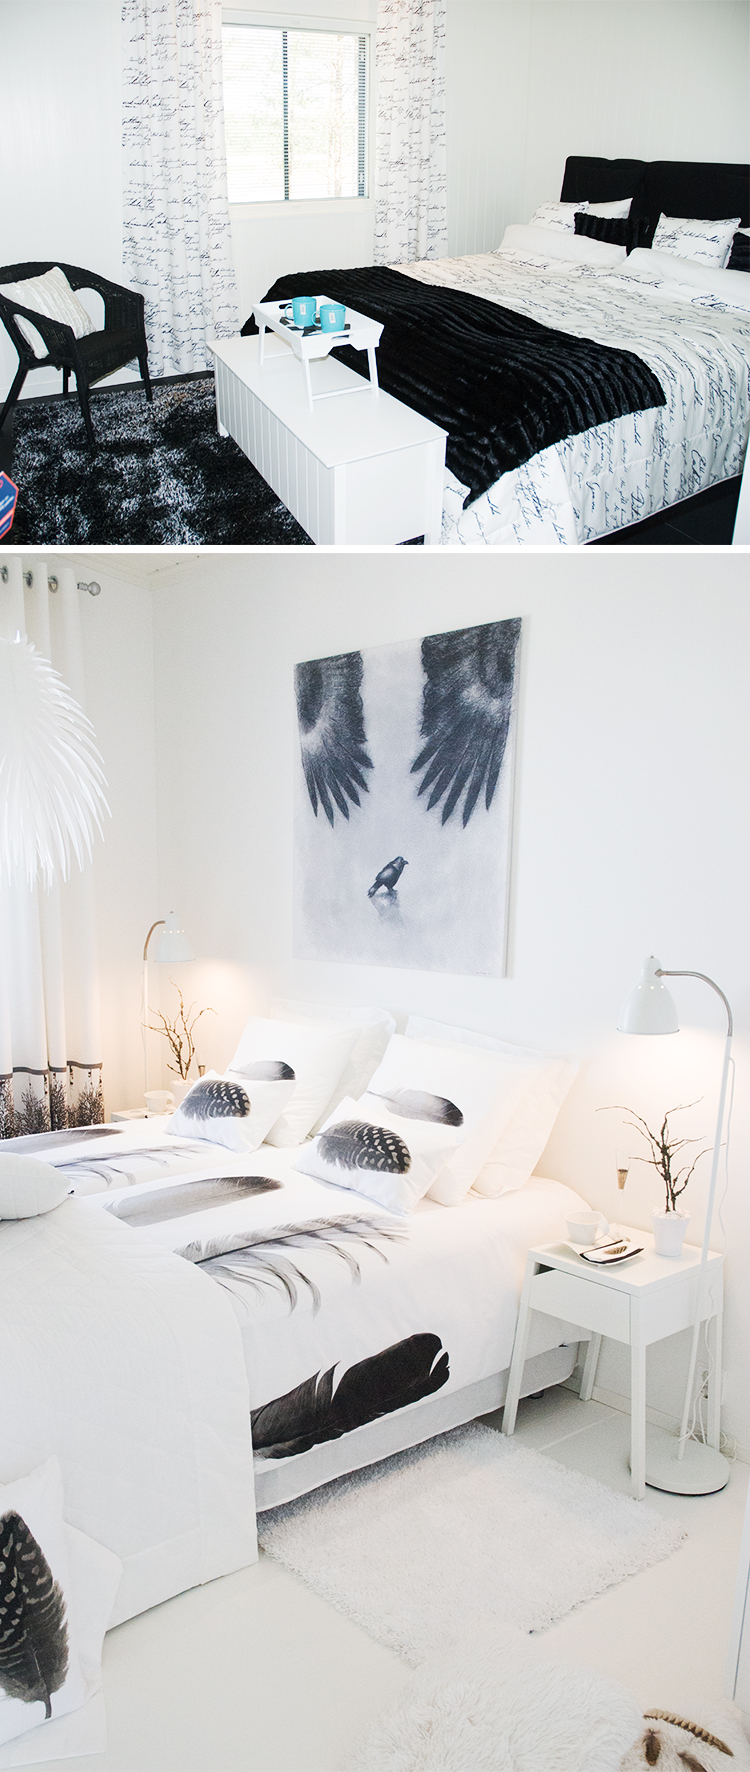 Sovrum i svart och vitt Foto: Annika Rådlund